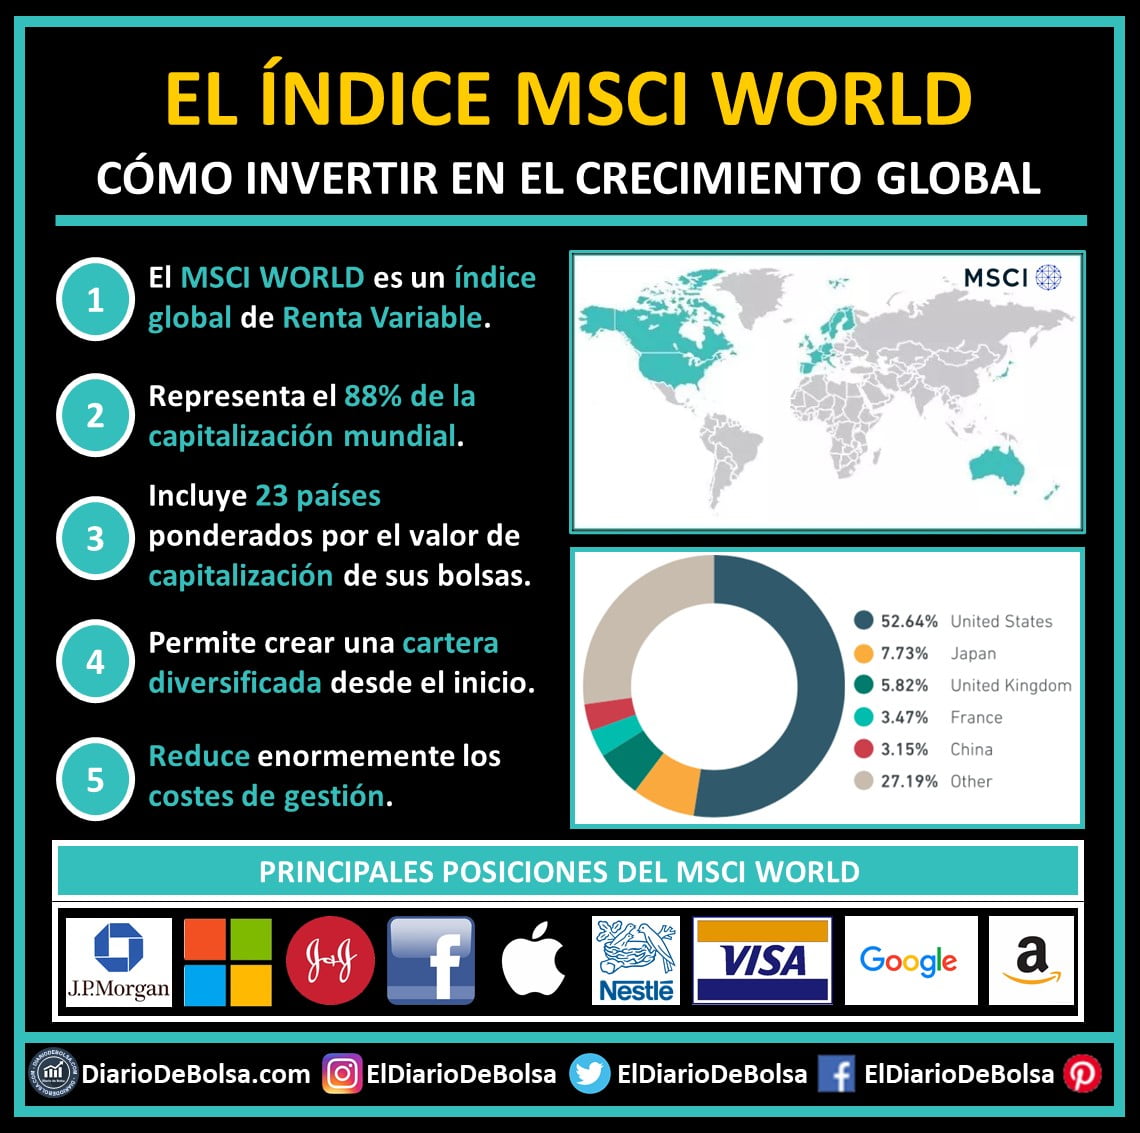 Esquema composición MSCI World, países representados y logos de empresas de las principales posiciones